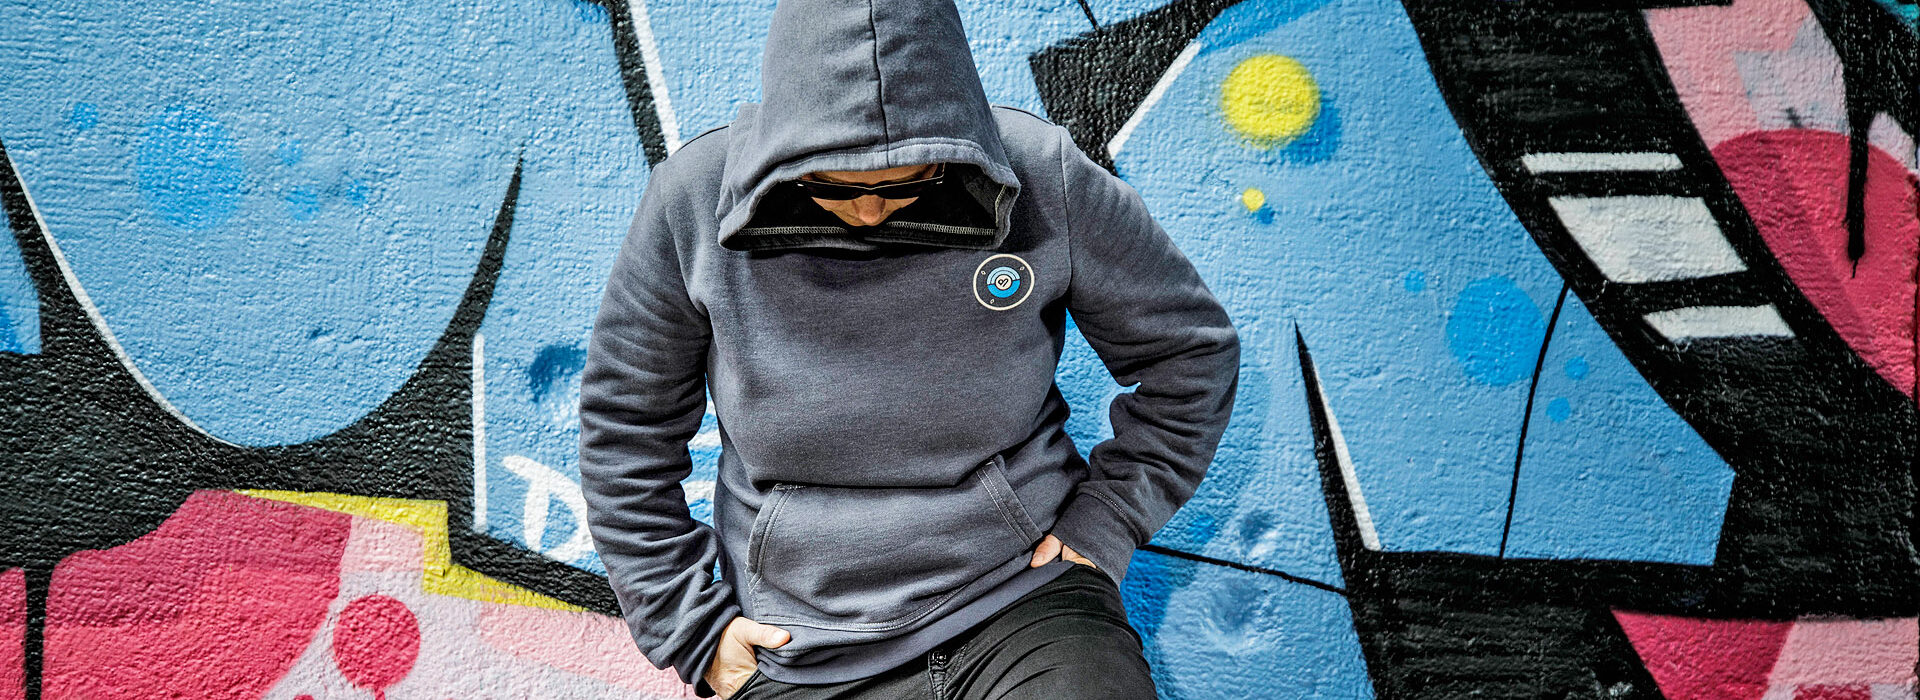 Foto: Jugendlicher mit Hoodie vor Grafittiwand